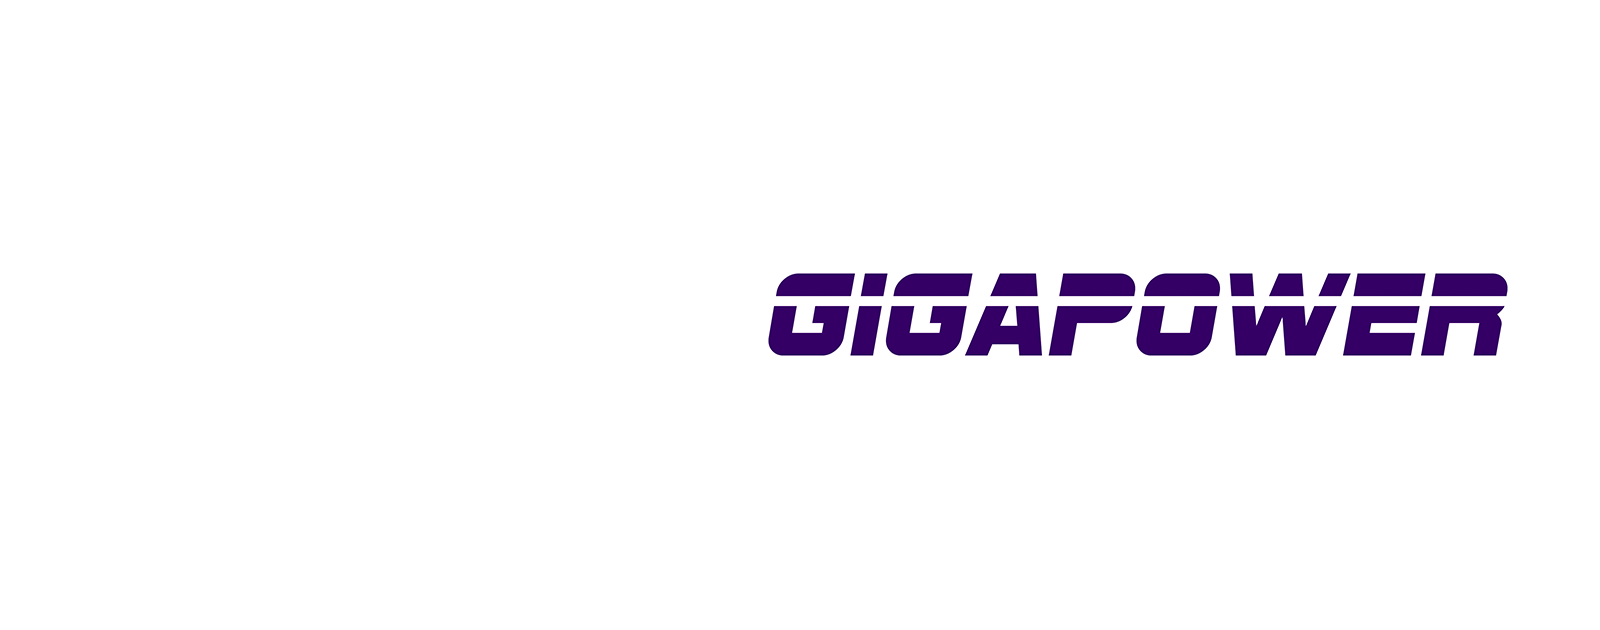 Gigapower logo